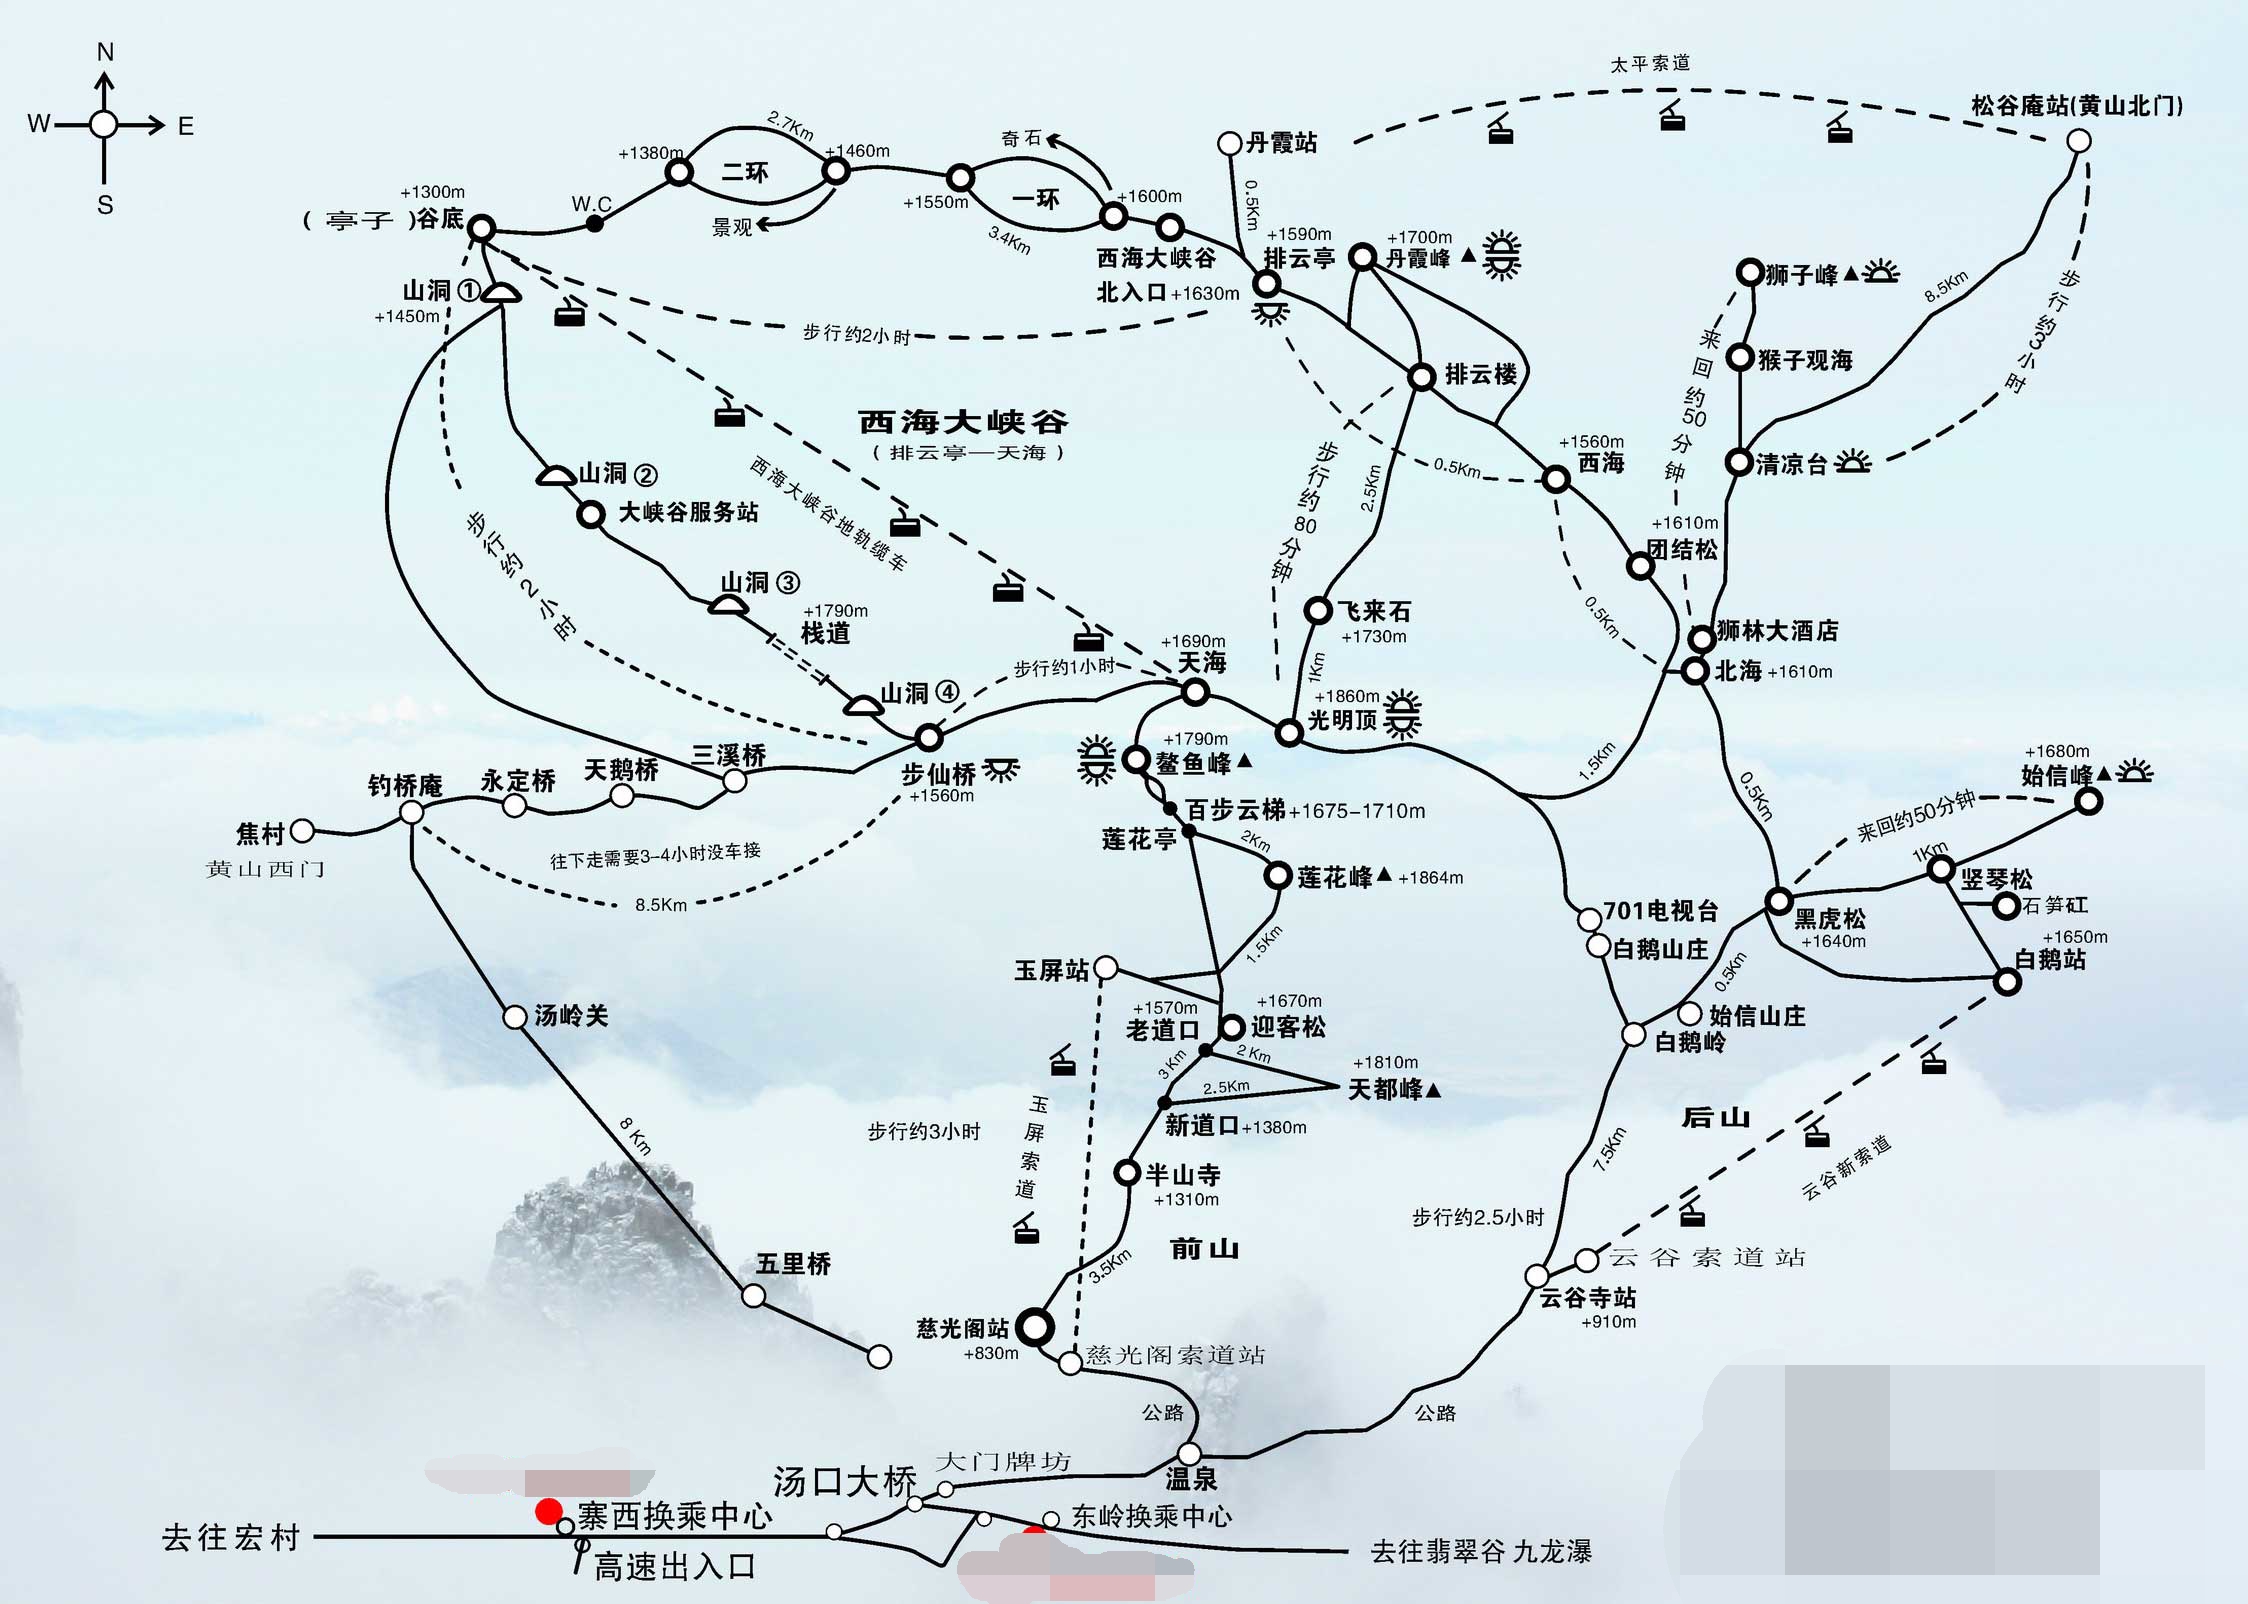 黄山旅游地图,来自网络,侵删